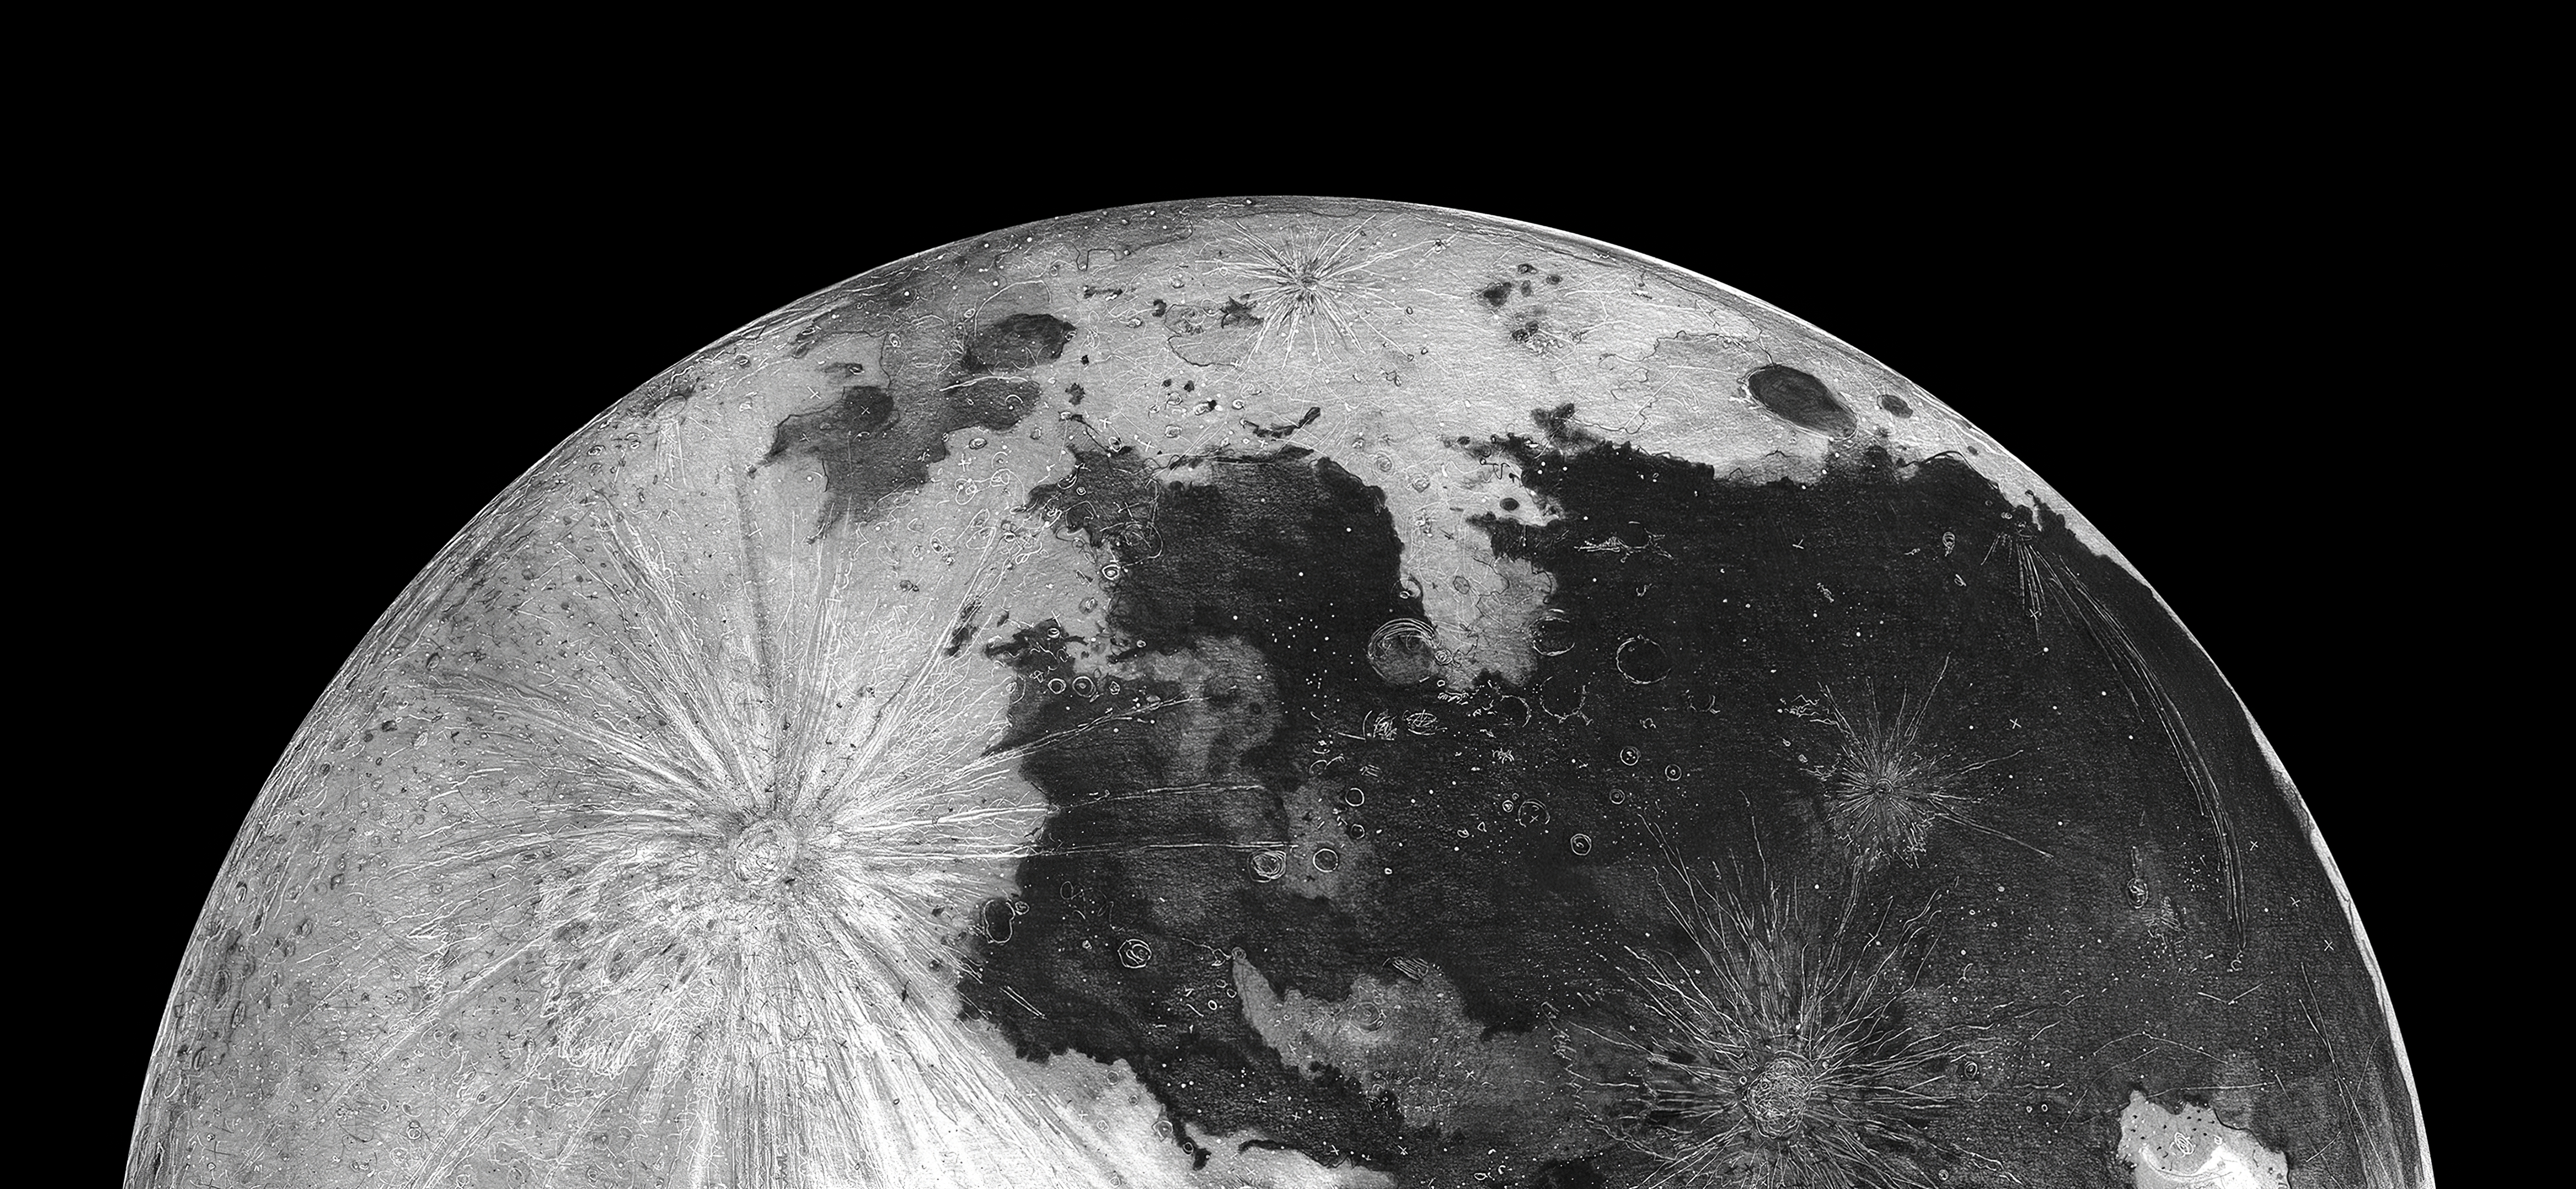 Hình nền Mặt trăng 4K: Cùng khám phá vẻ đẹp của Mặt trăng với hình nền 4K. Với hình ảnh tinh tế và chân thực, hình nền Mặt trăng 4K sẽ đem lại cho bạn không gian làm việc hoàn hảo, dễ chịu và đầy nhân văn.